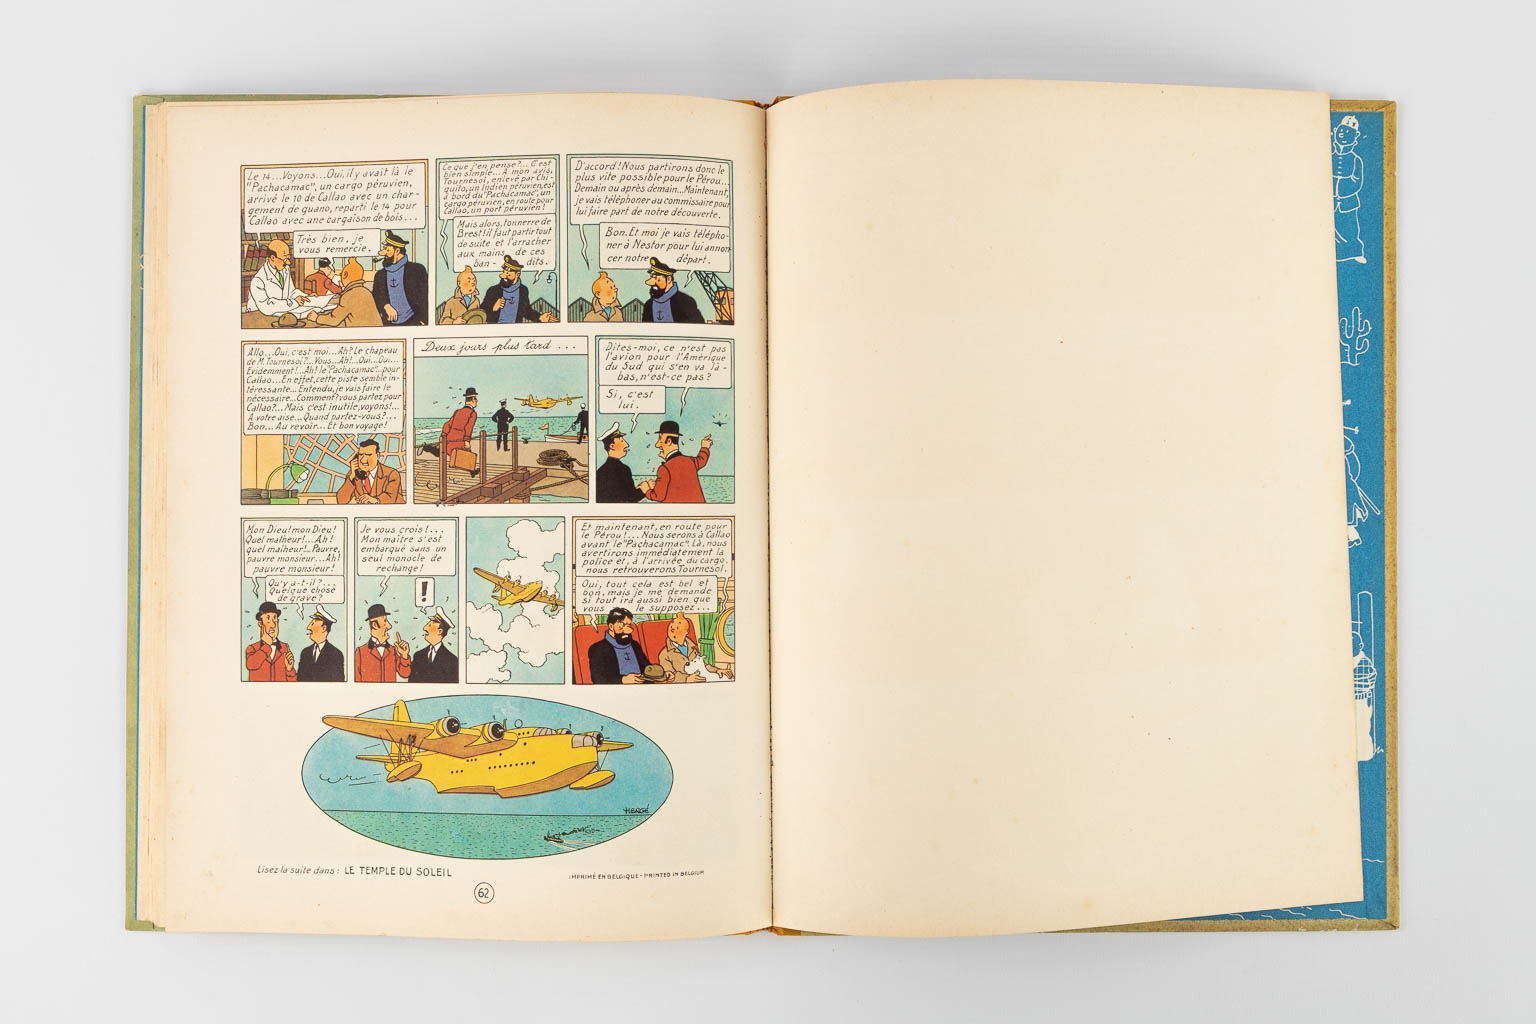 Hergé, Les Avontures De Tintin, Les 7 Boules De Cristal, a comic book. 1948. (W:23,5 x H:30,5 cm)